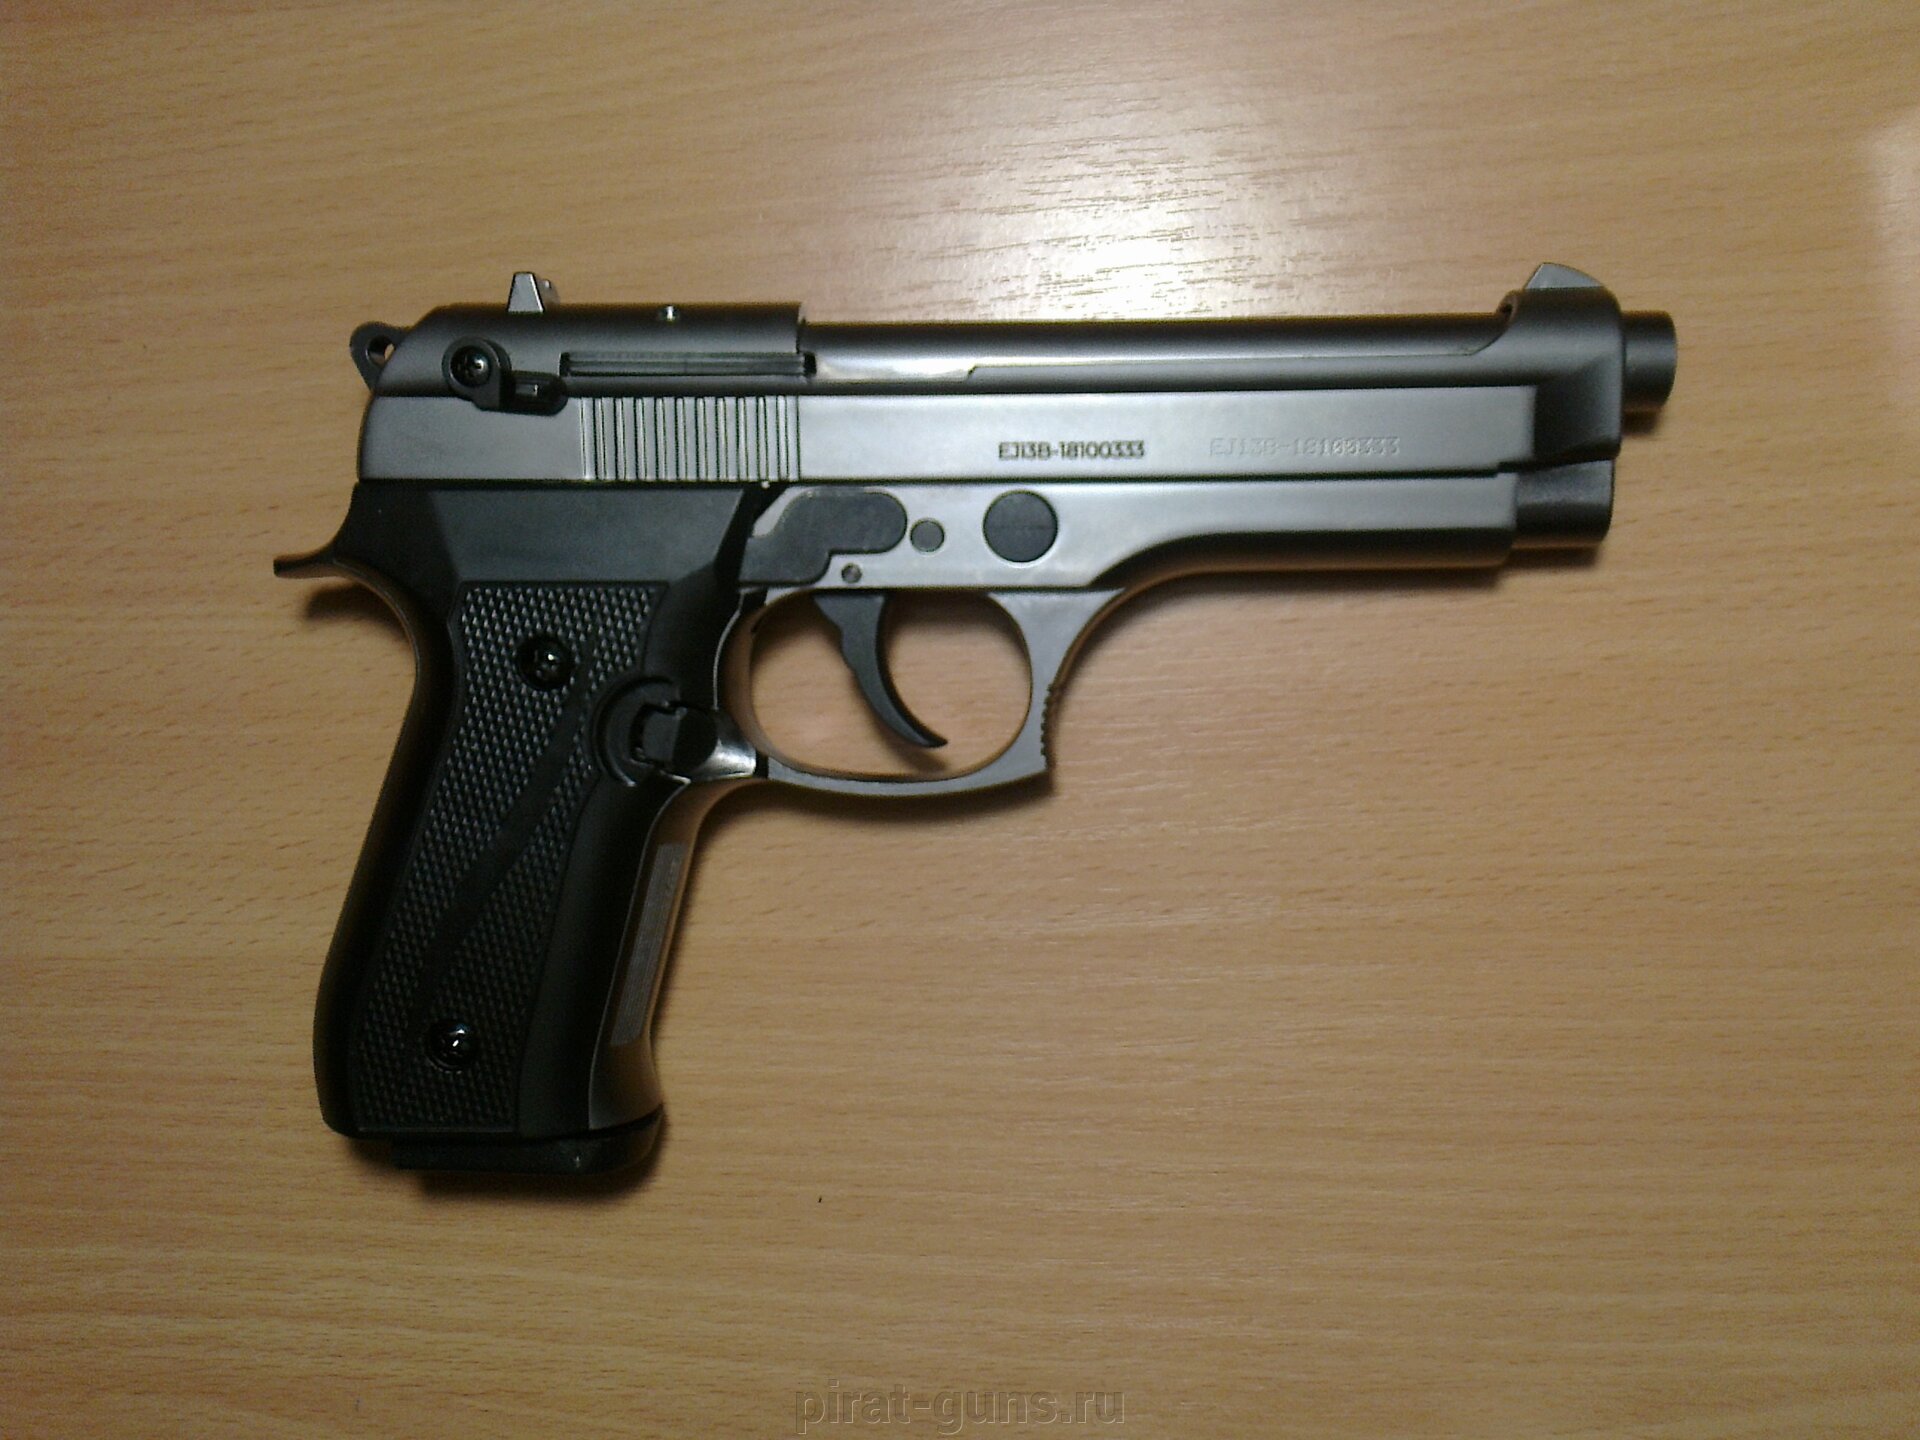 Охолощенный пистолет Beretta 92 (графит) - фото pic_96510c68f424a141b85c972c7ef9bb15_1920x9000_1.jpg